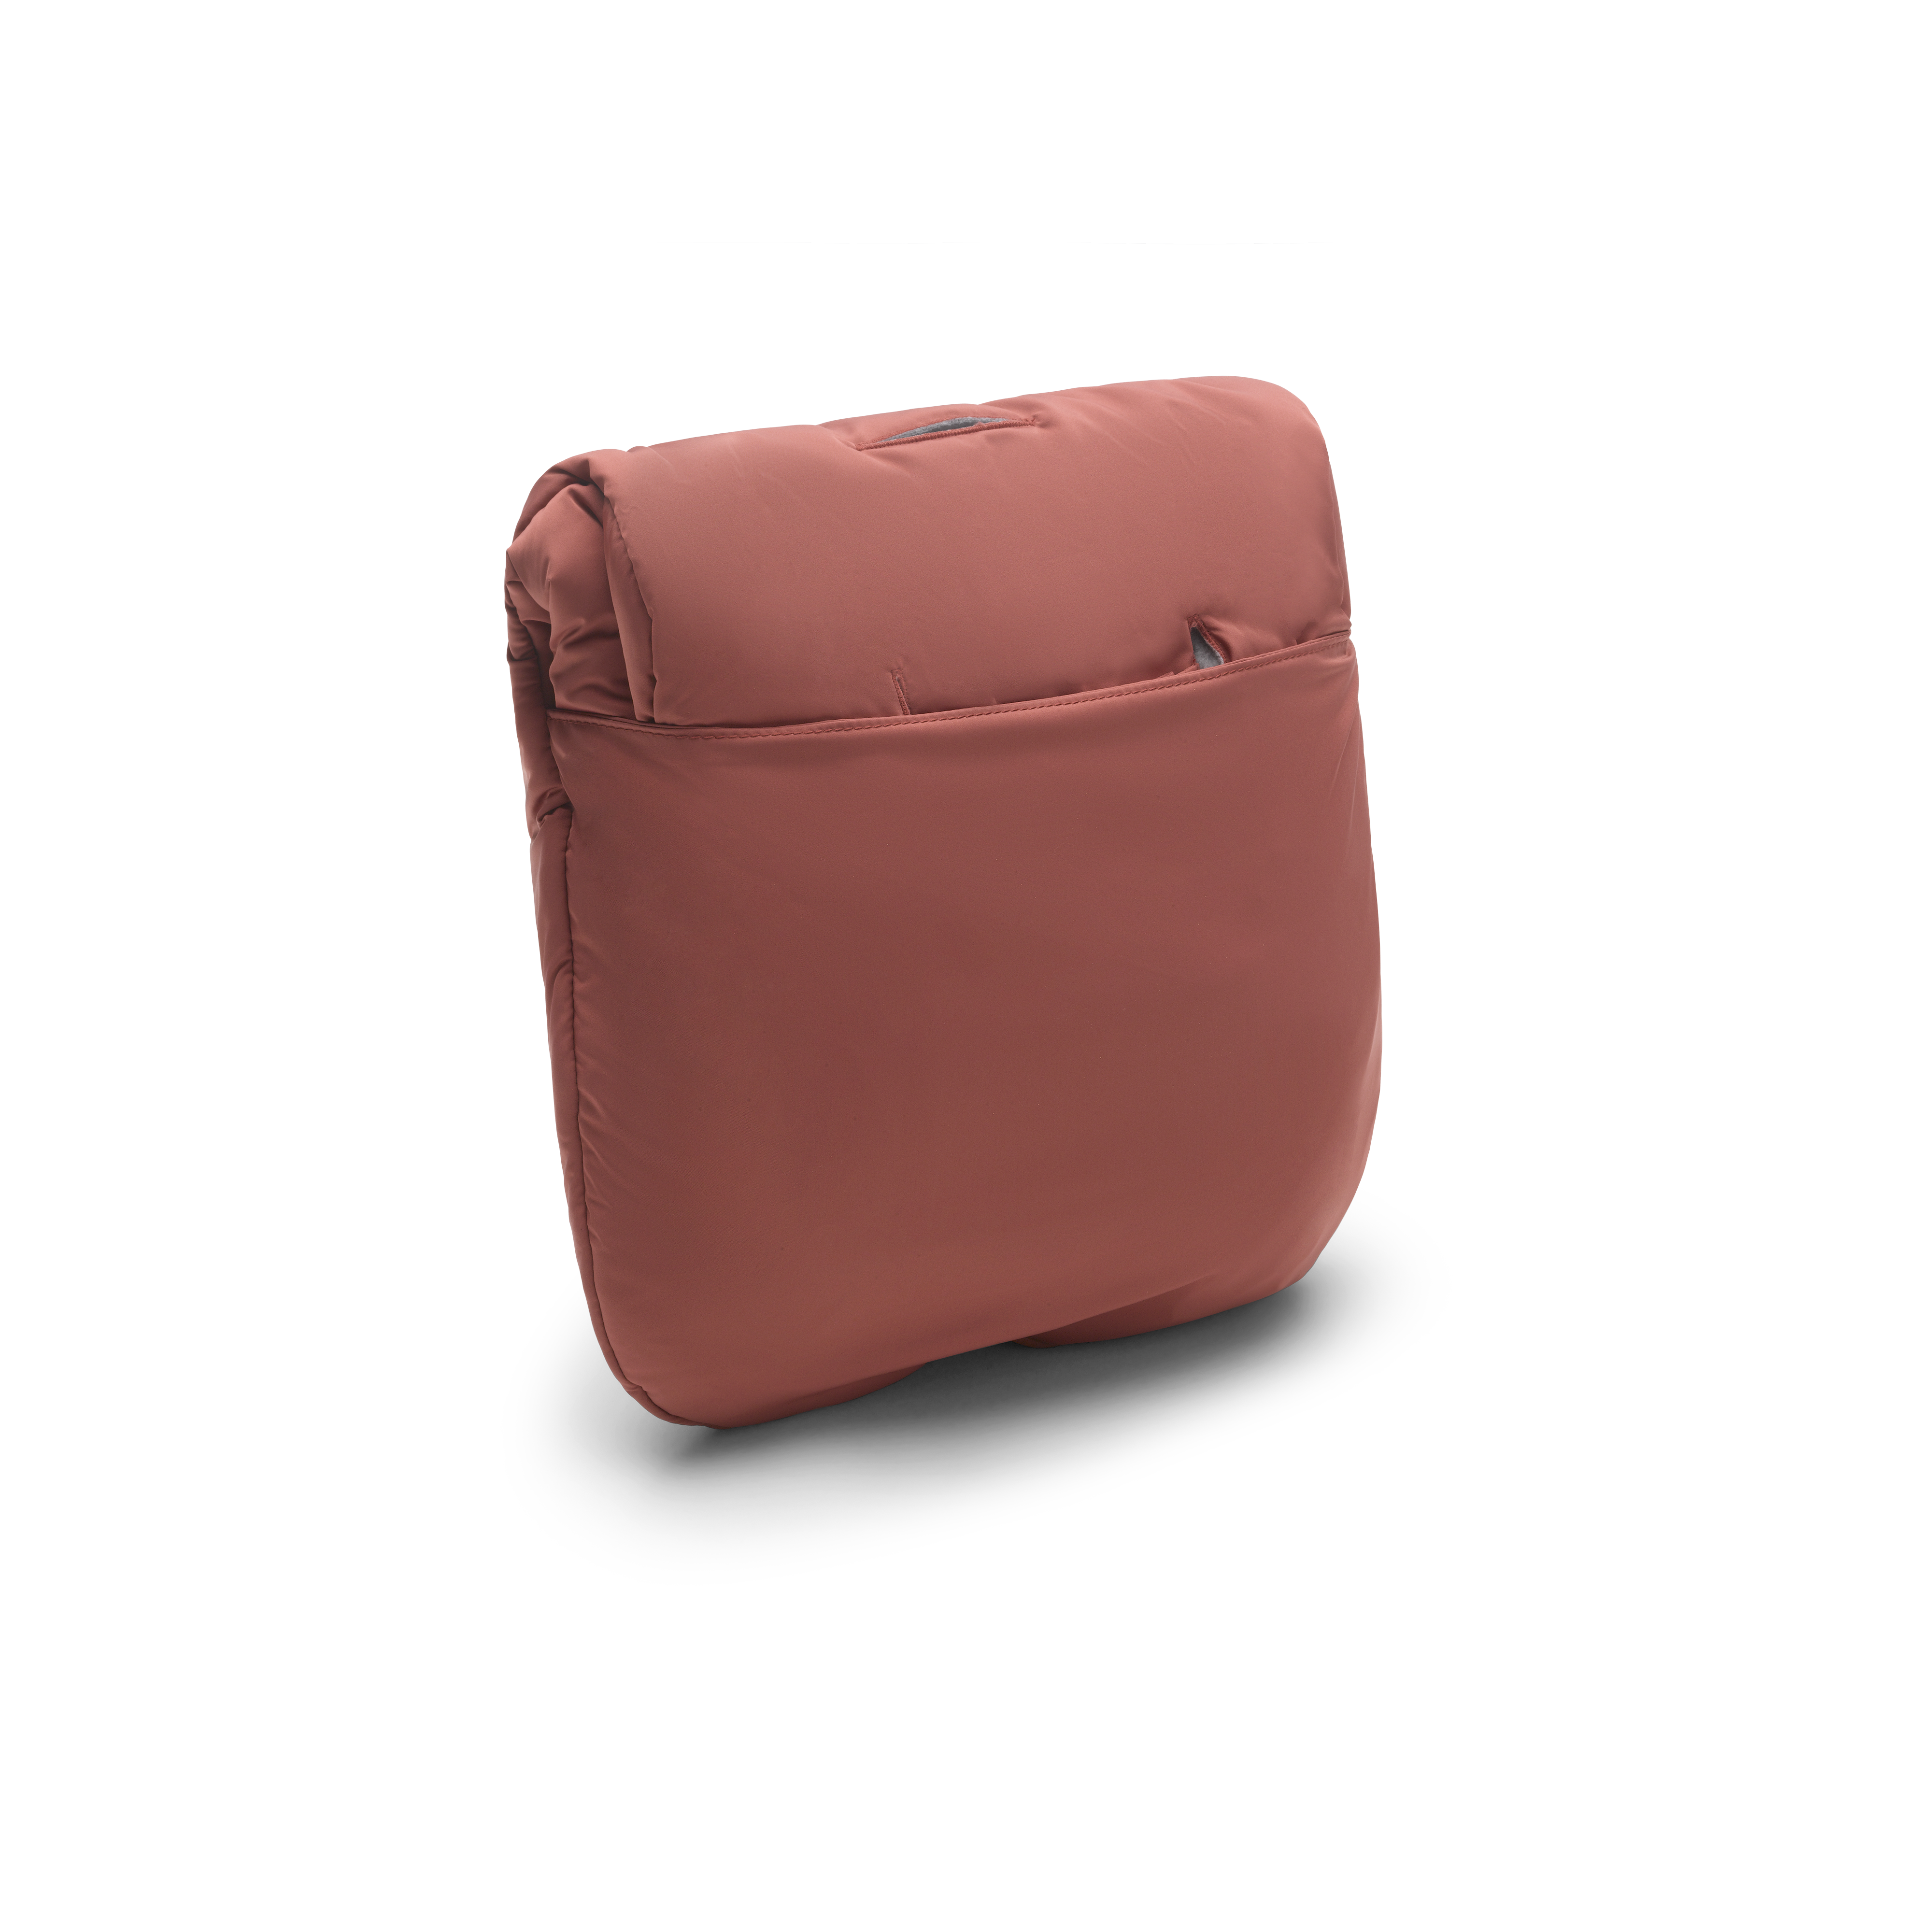 Ashwood Deep Red Leather Adjustable Crossbody Shoulder Bag